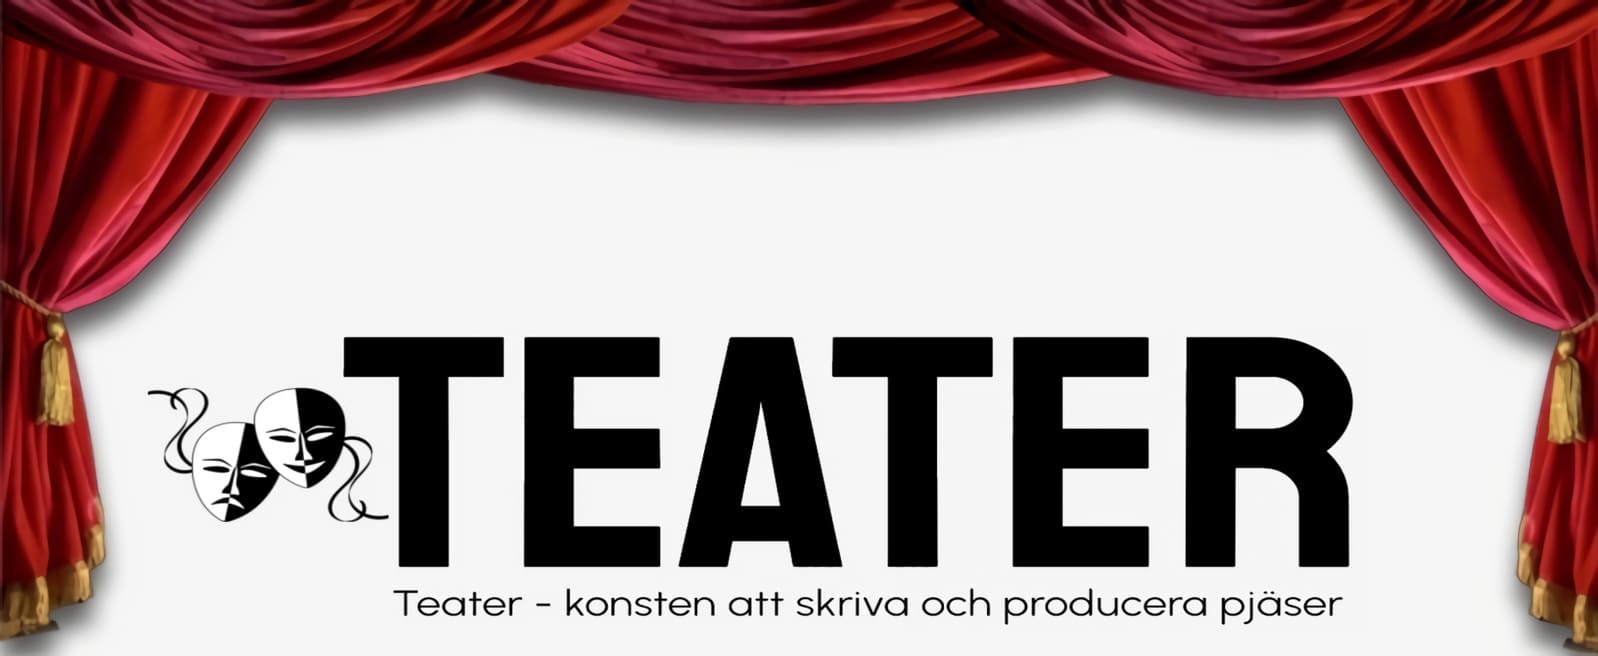 Teater – konsten att skriva och producera pjäser